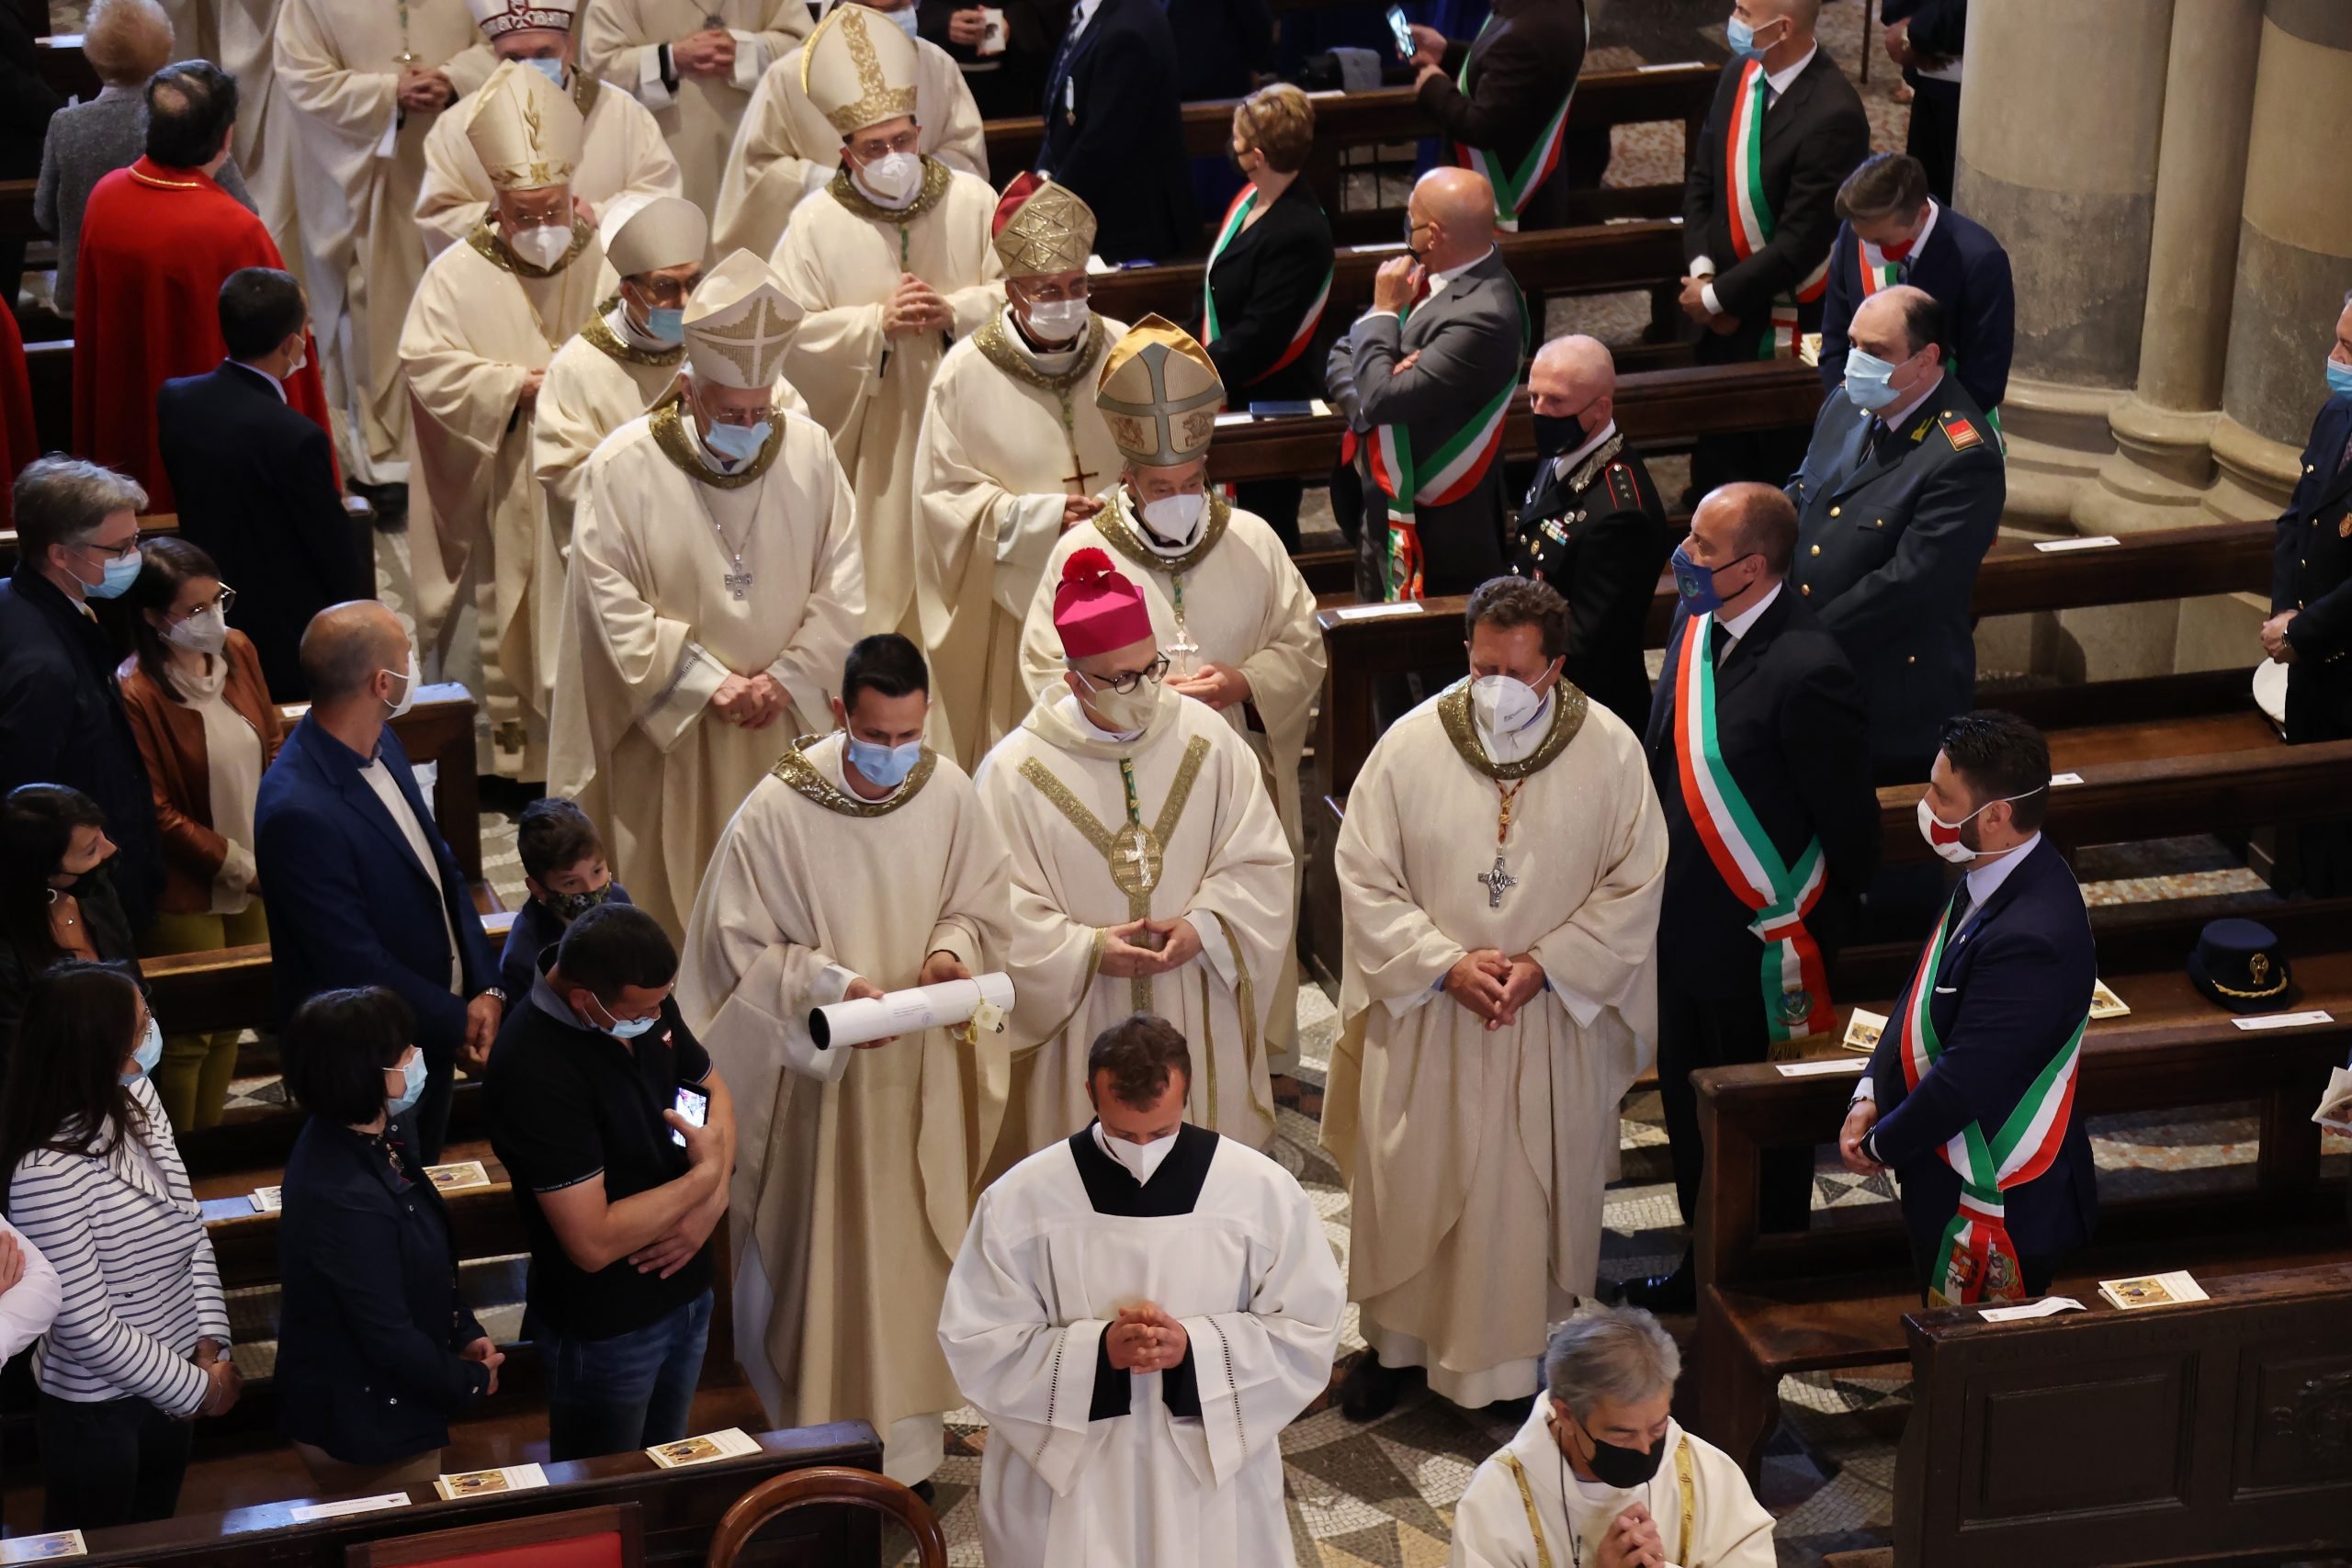 Monsignor Giampio Devasini consacrato vescovo: la cerimonia alla Cattedrale di Casale